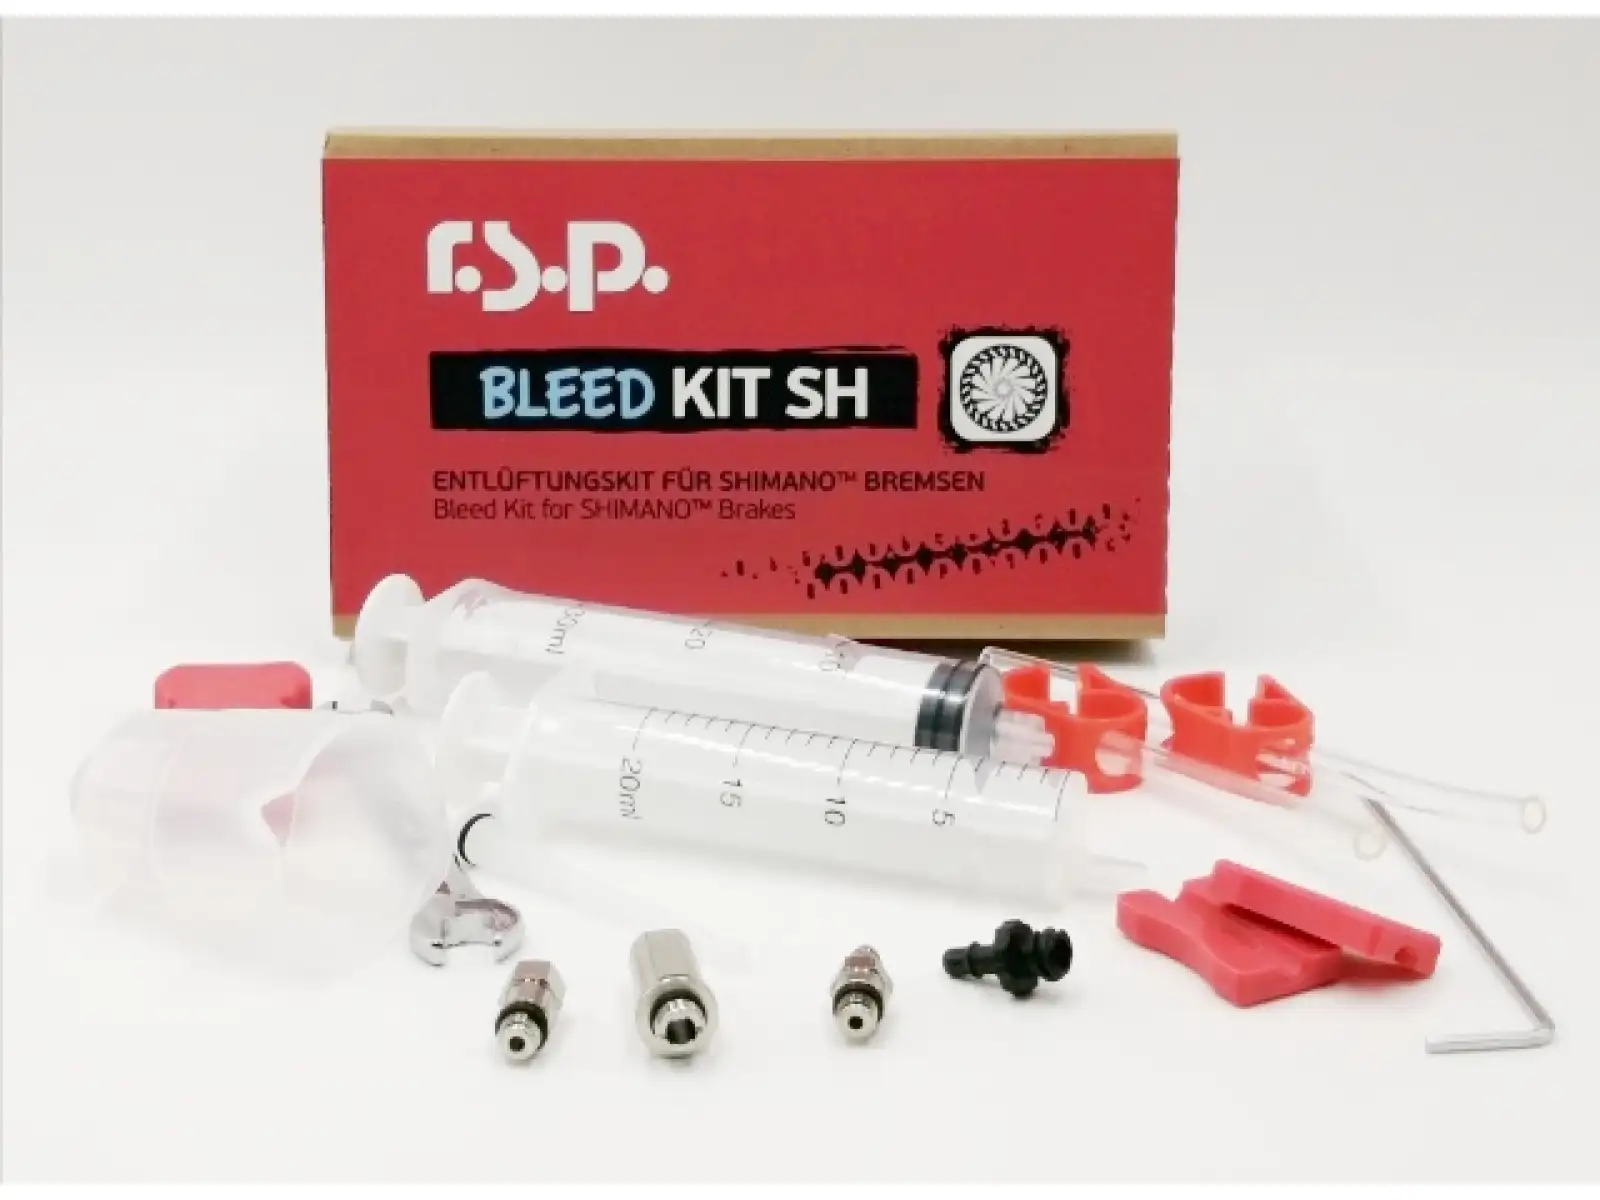 RSP Bleed Kit odvzdušňovací sada pro brzdy Shimano